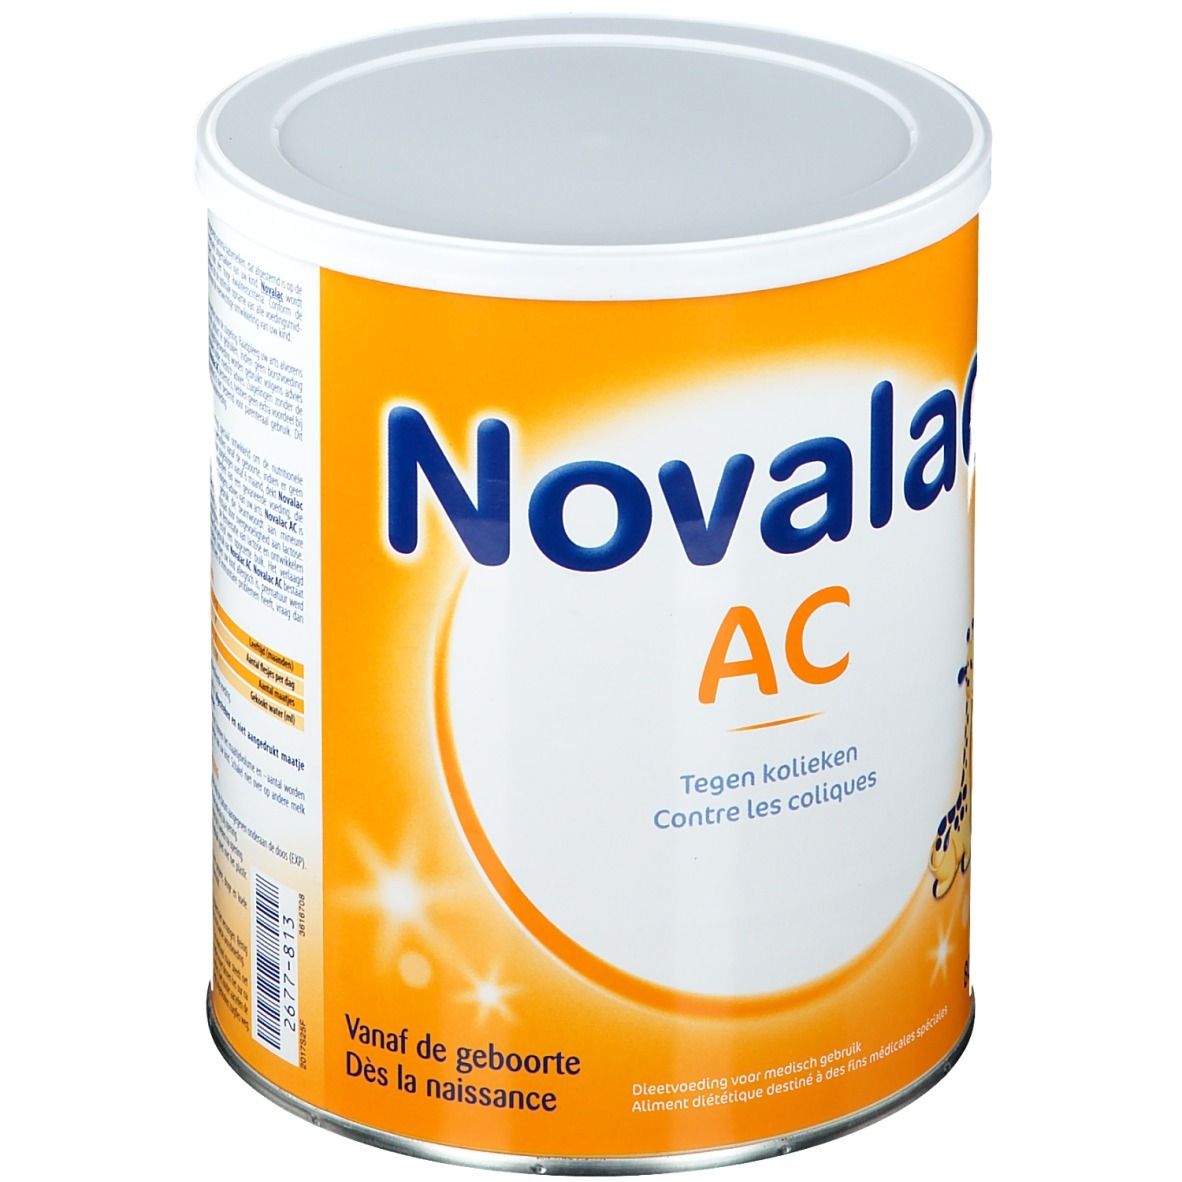 Novalac AC 1